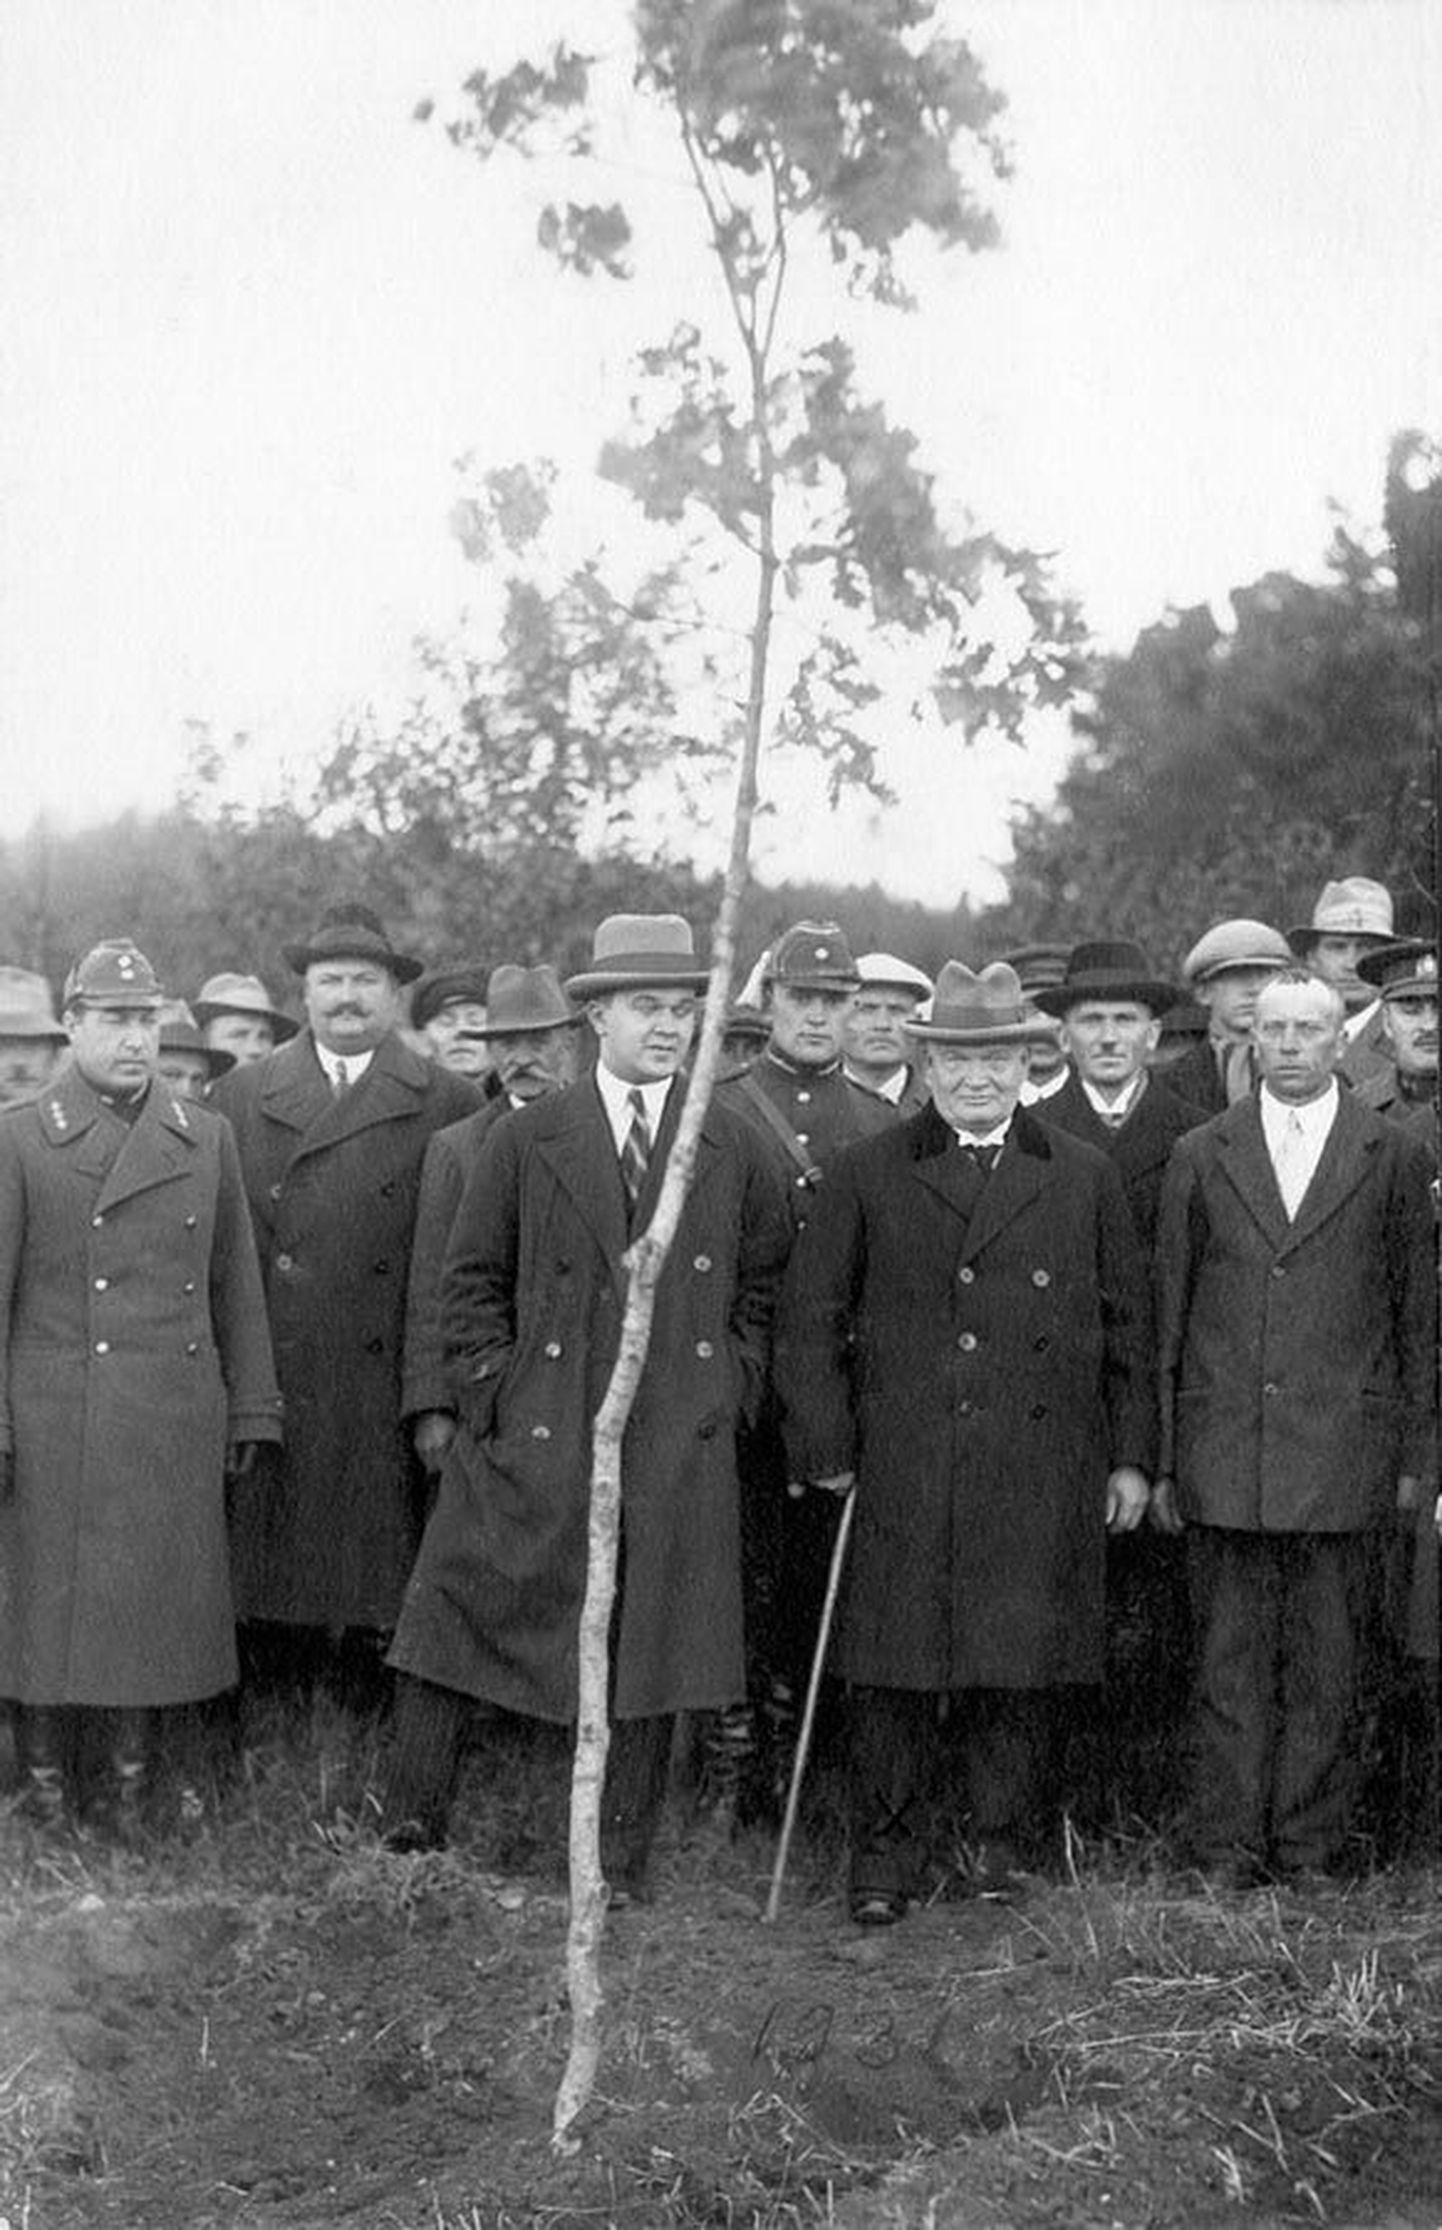 Riigivanem Konstantin Päts istutas 1931. aasta oktoobris esivanemate mälestuseks Holstre valda Rebase külla oma vaarisa sünnitallu Pätsuveskile tamme. Just Pätsuveski järgi sai suguvõsa ka perekonnanime.